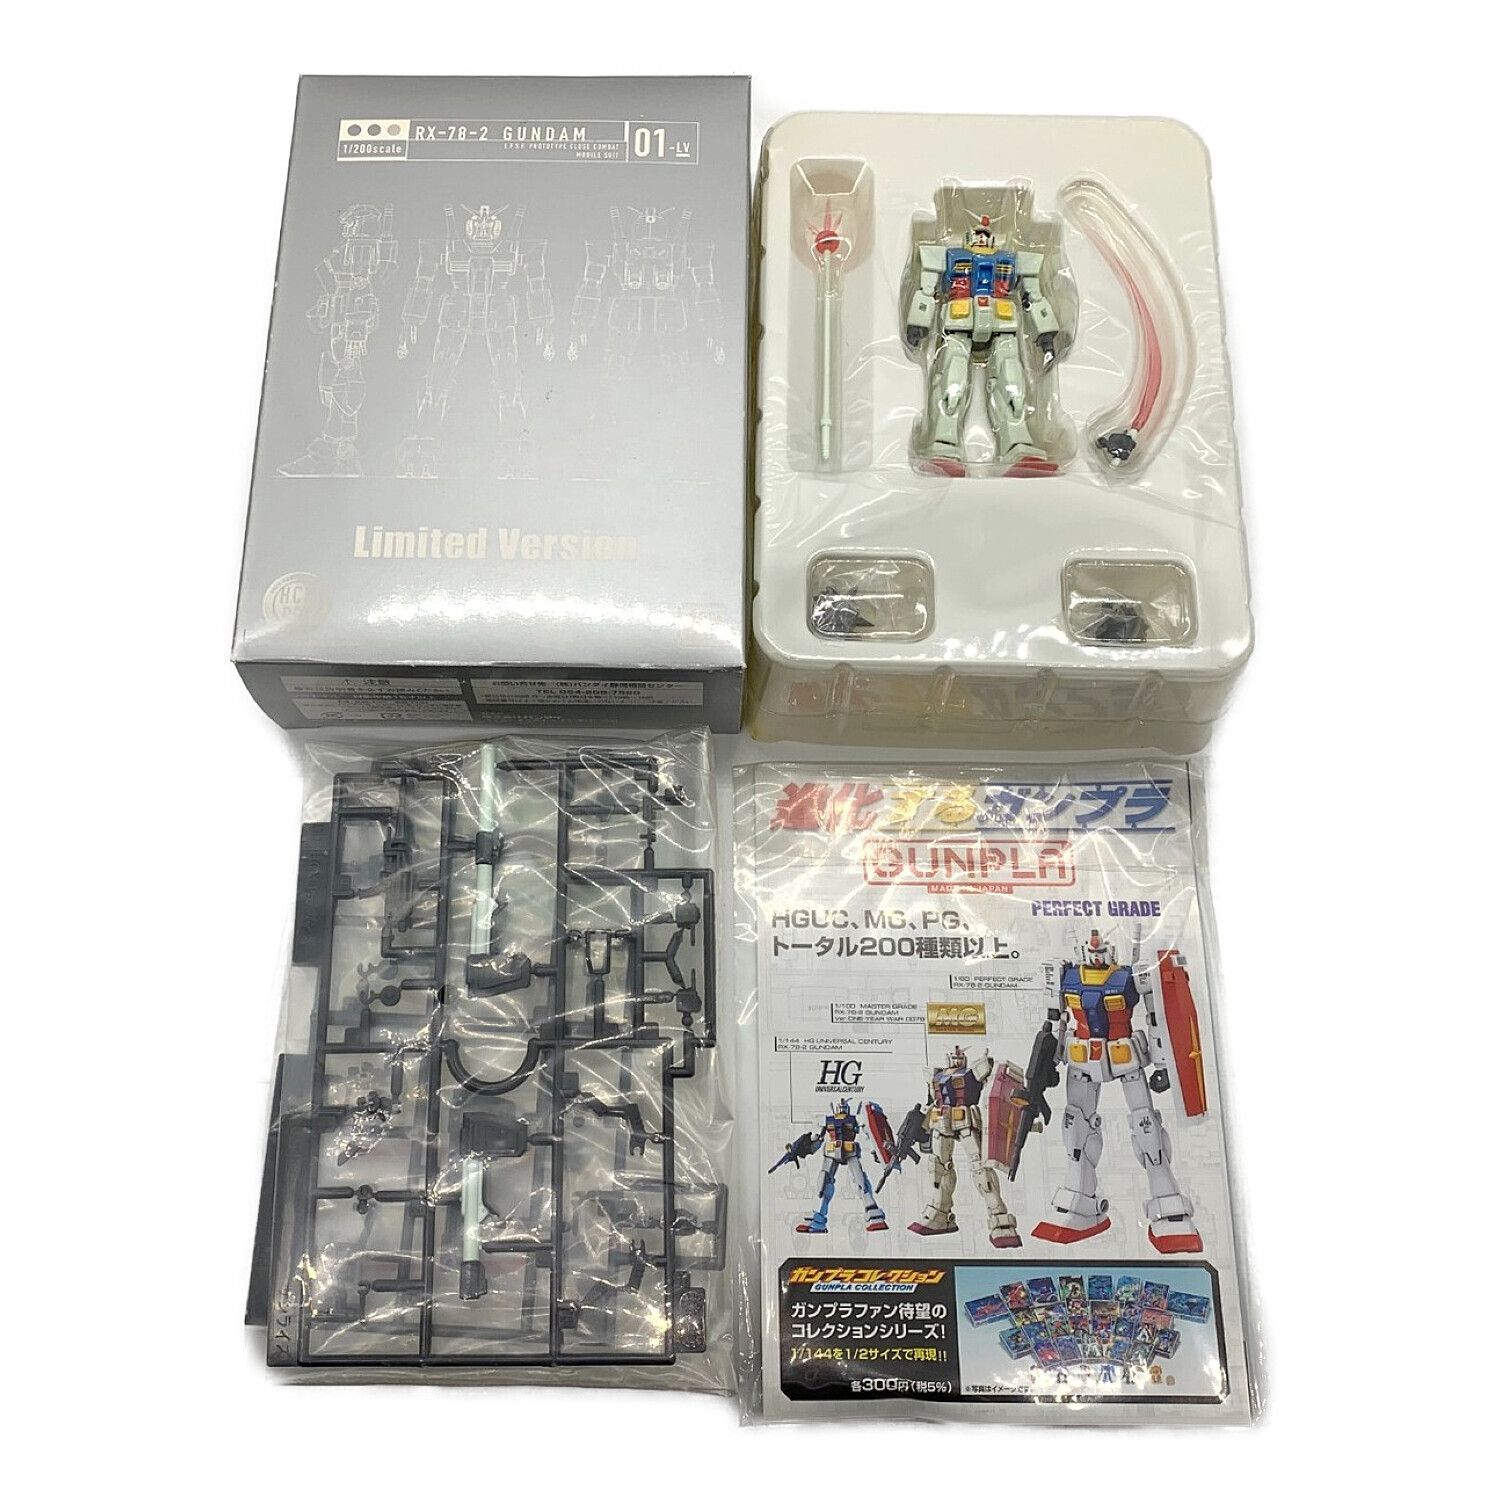 機動戦士ガンダム DVD-BOX 1.2〈初回限定生産〉 MOBILE SUIT